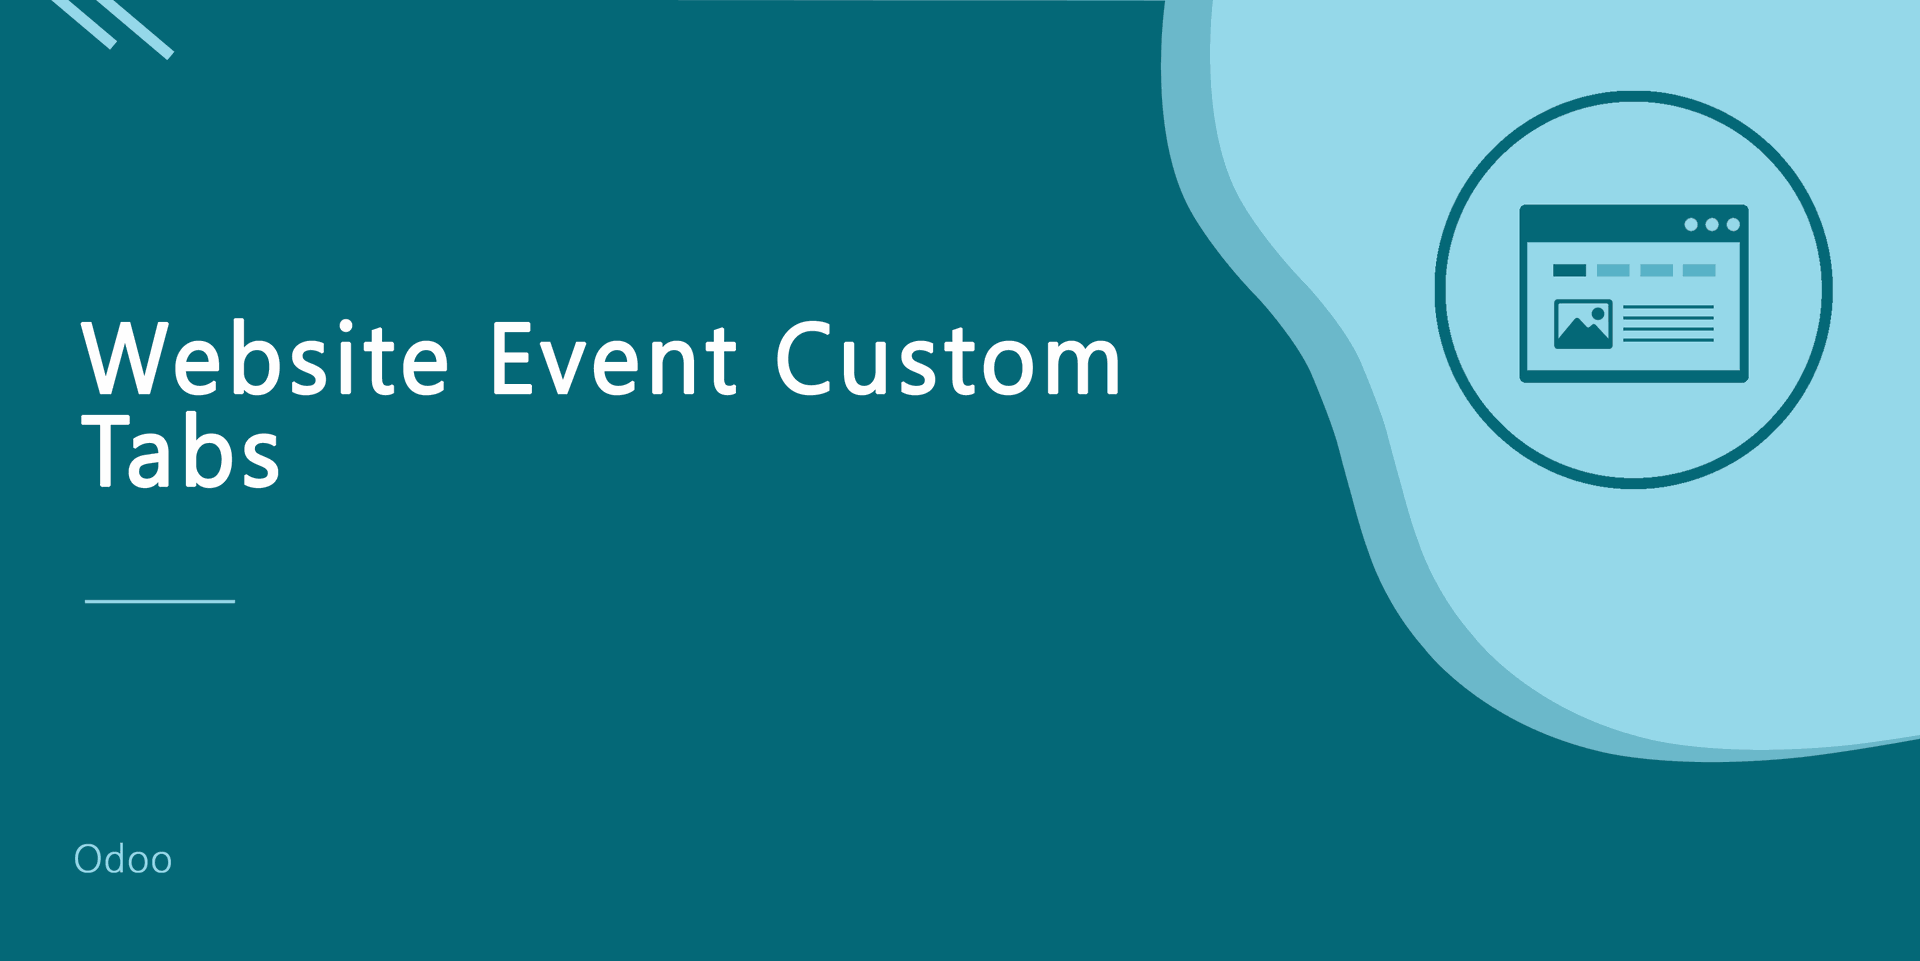 Website Event Custom Tab
